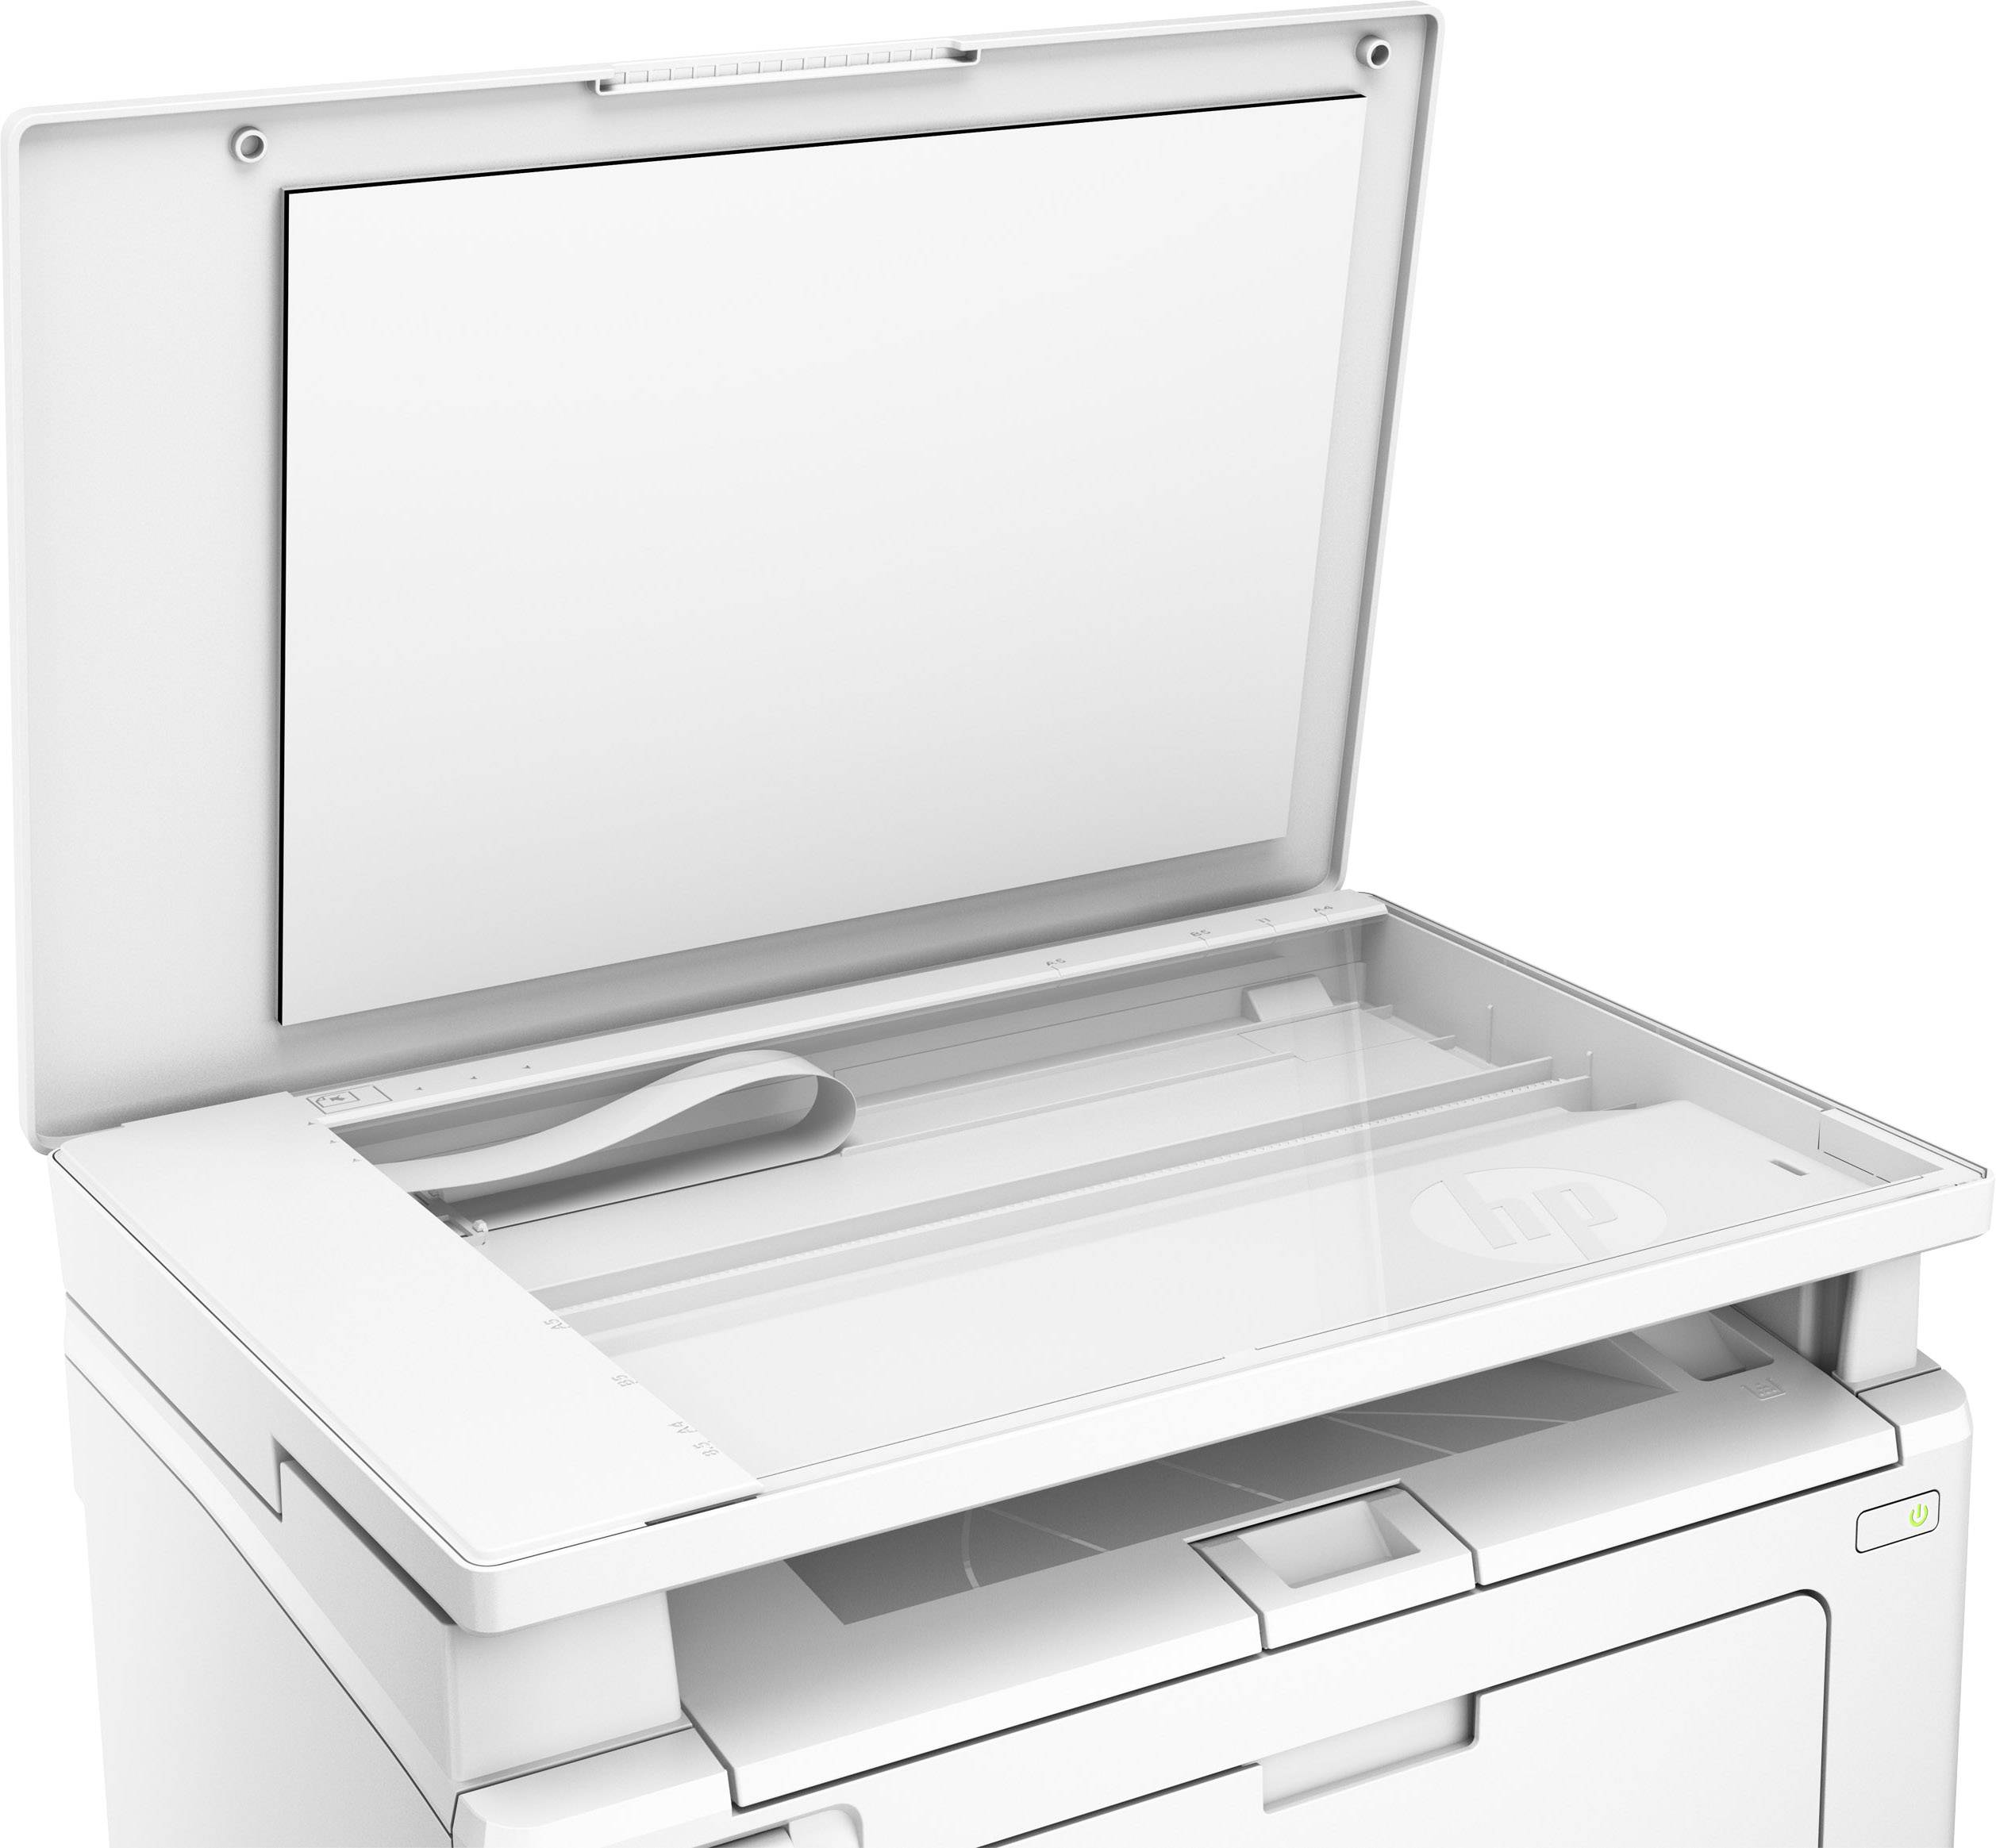 HP LaserJet Pro MFP M130nw Mono laser multifunction printer A4 Printer, scanner, copier LAN, Wi ...